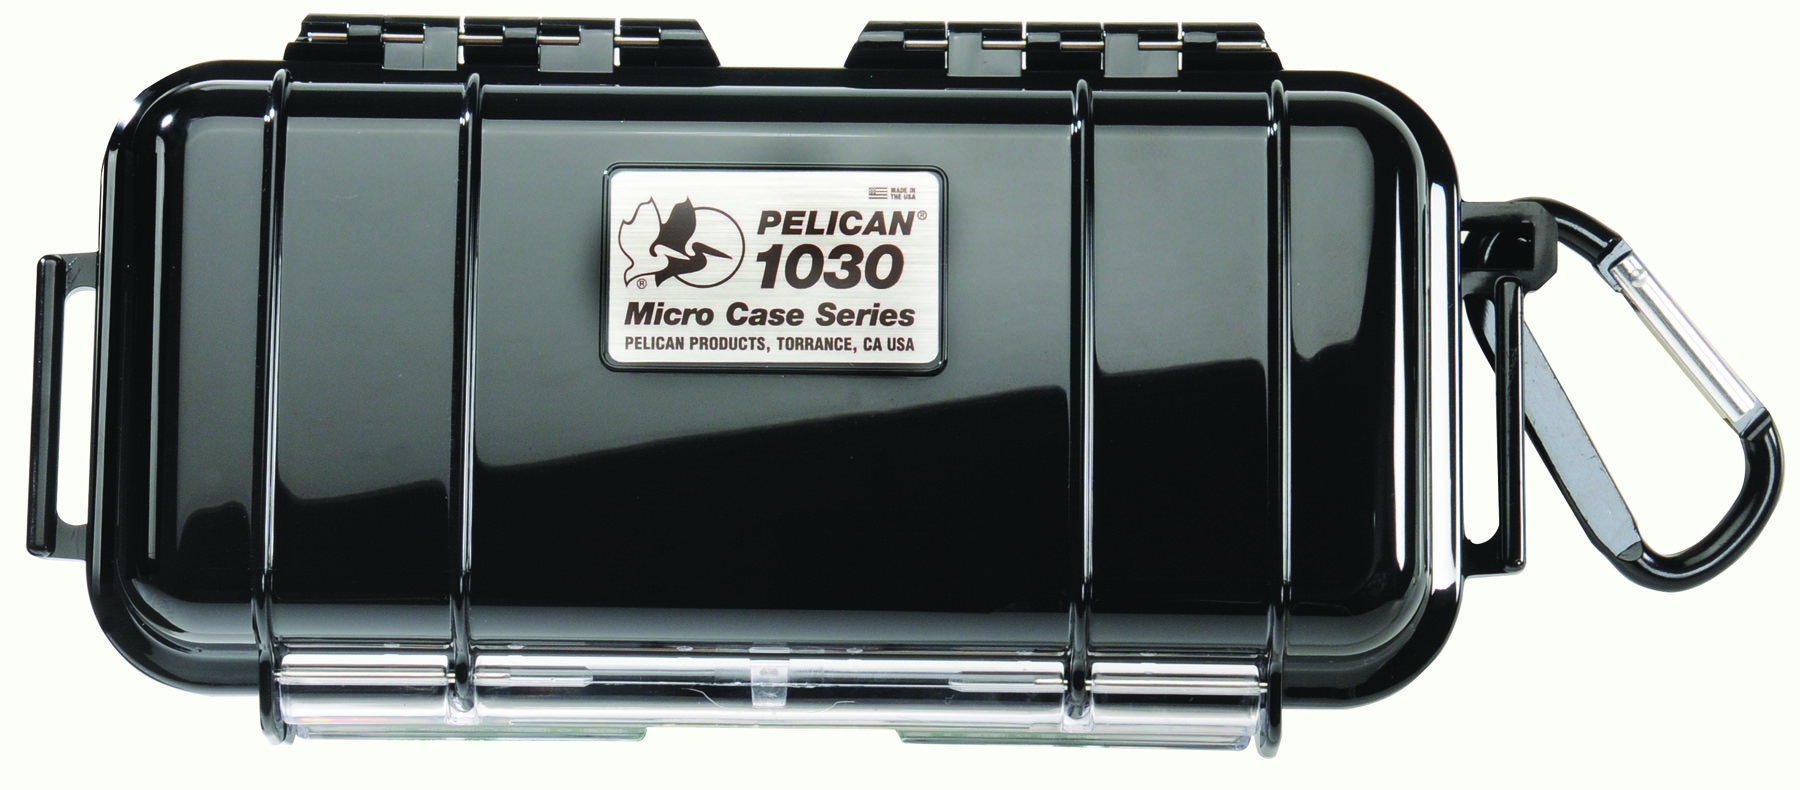 1030 - 1030 Micro Case Pelican Dry Box